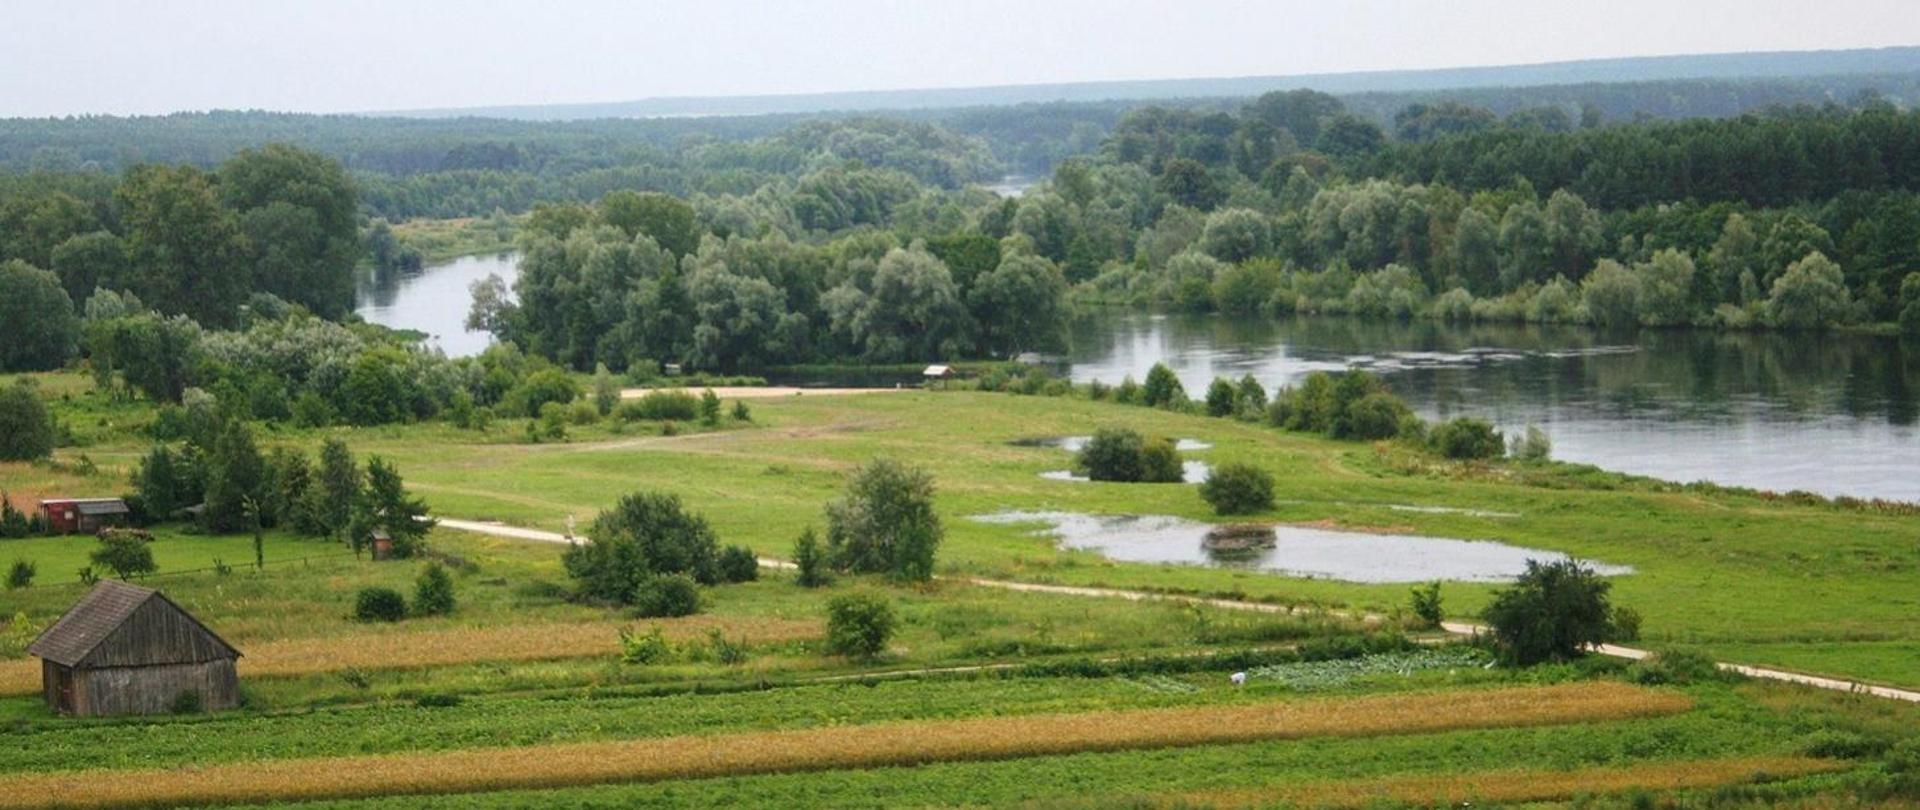 Krajobraz z widokiem na zielone łąki i rzekę z dużą ilością drzew, w lewym dolnym rogu stodoła. Zdjęcie przedstawia tereny województwa podlaskiego.